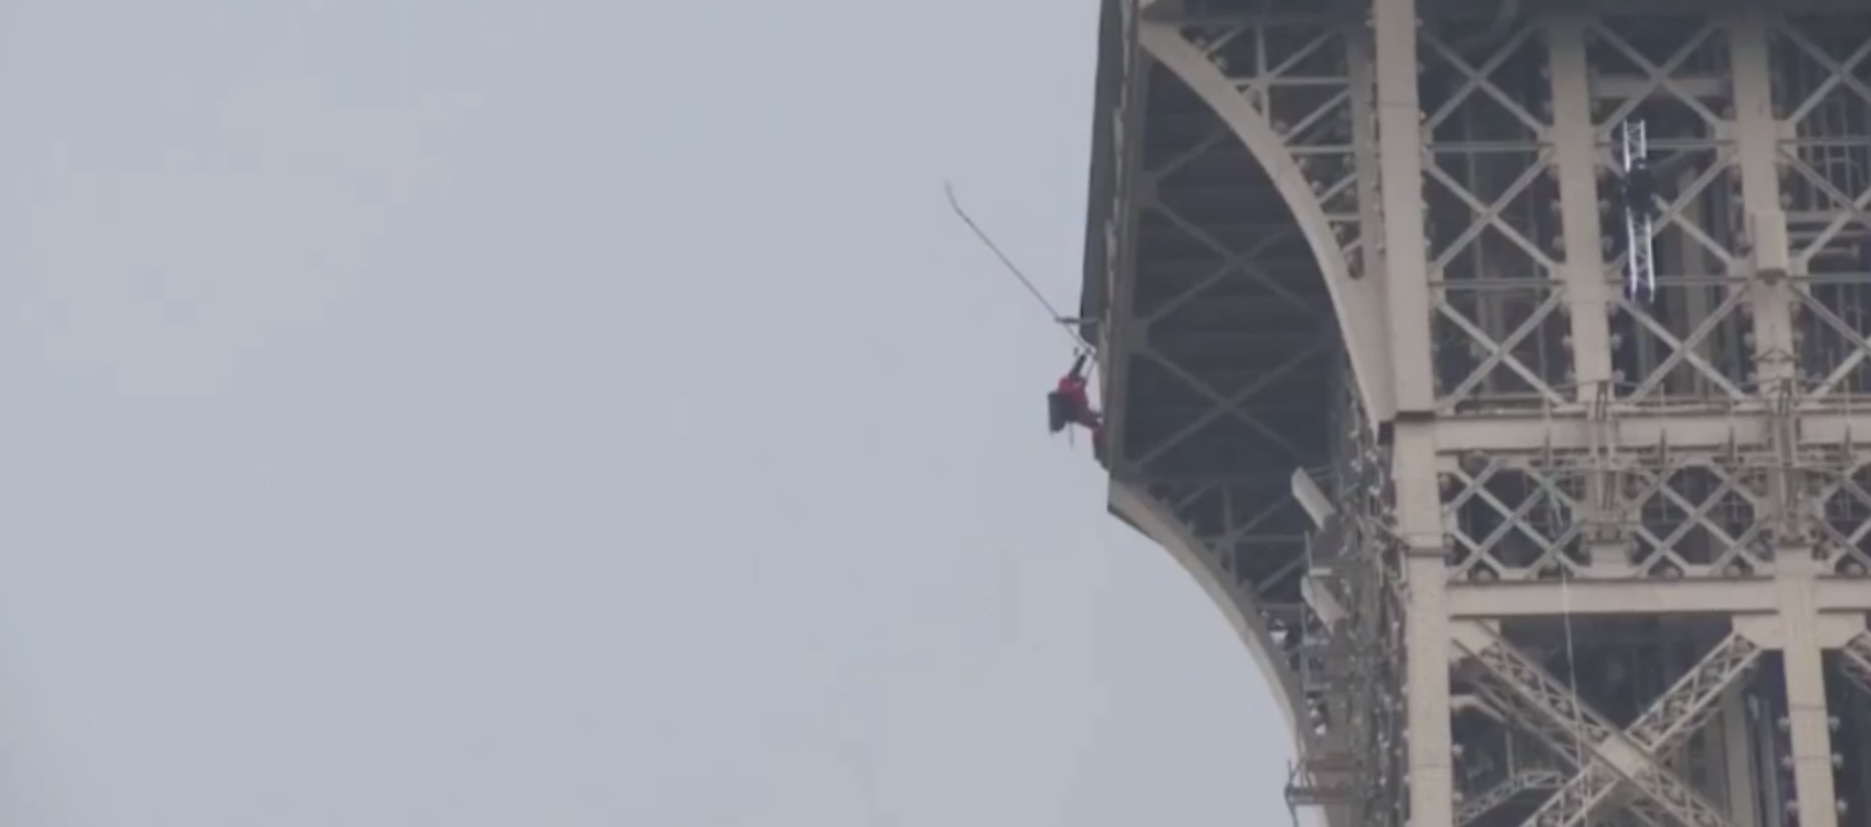 Kiürítették az Eiffel-tornyot, mert valaki felmászott rá